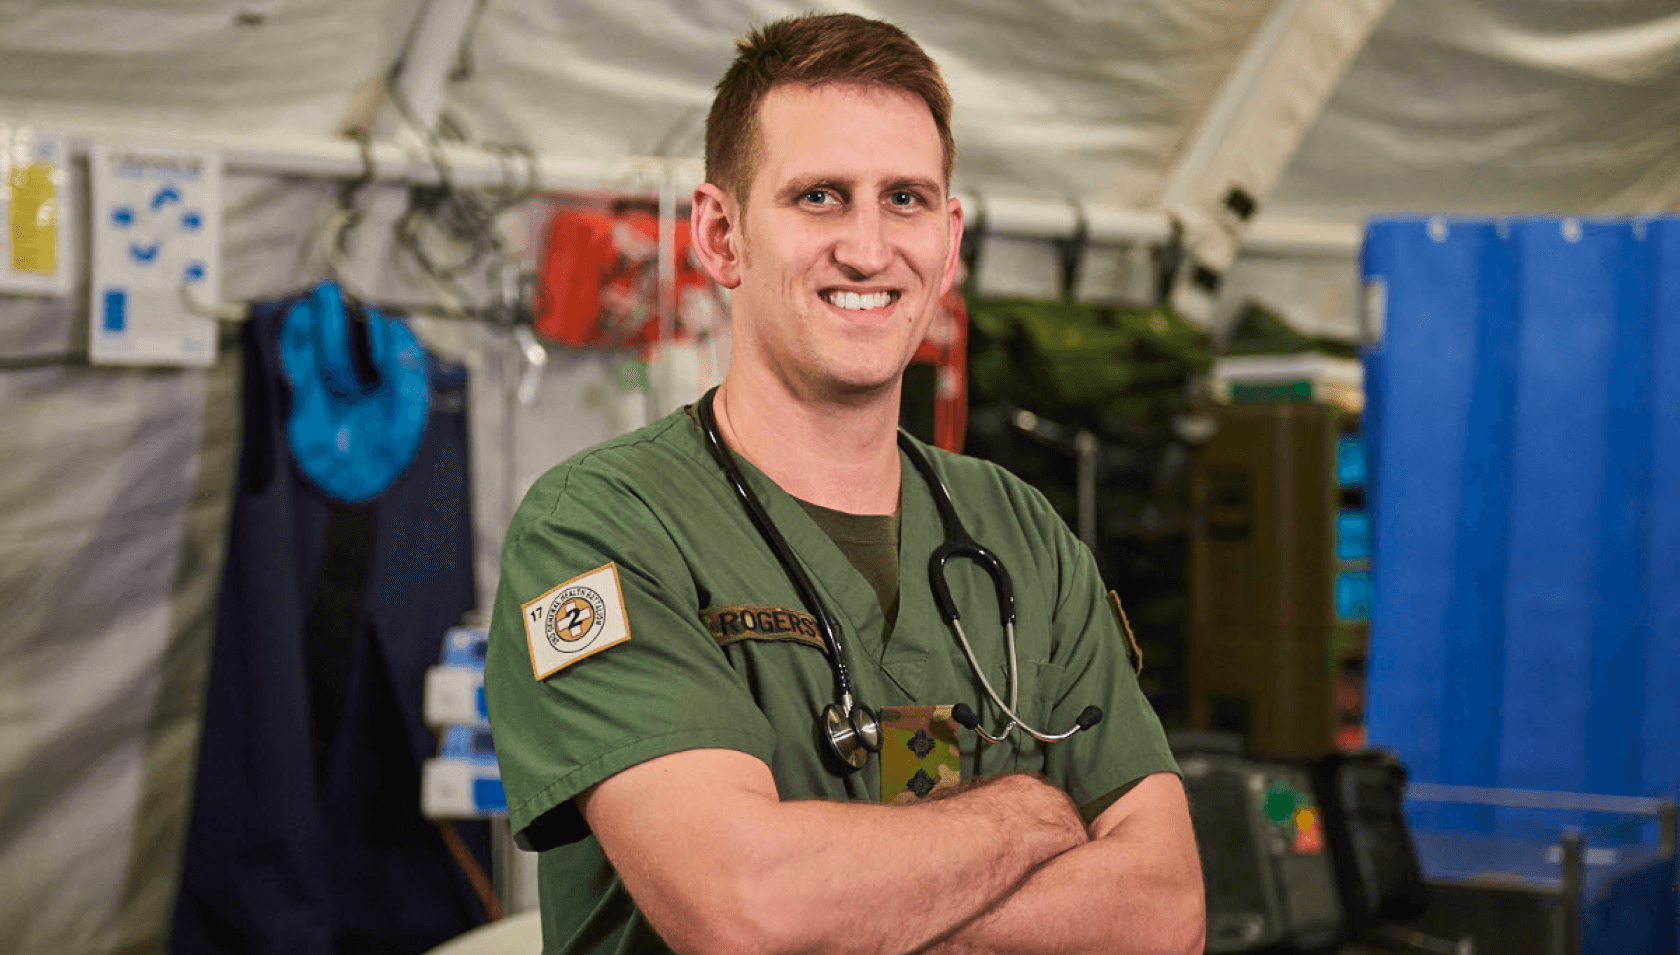 An Army medic smiles at camera.